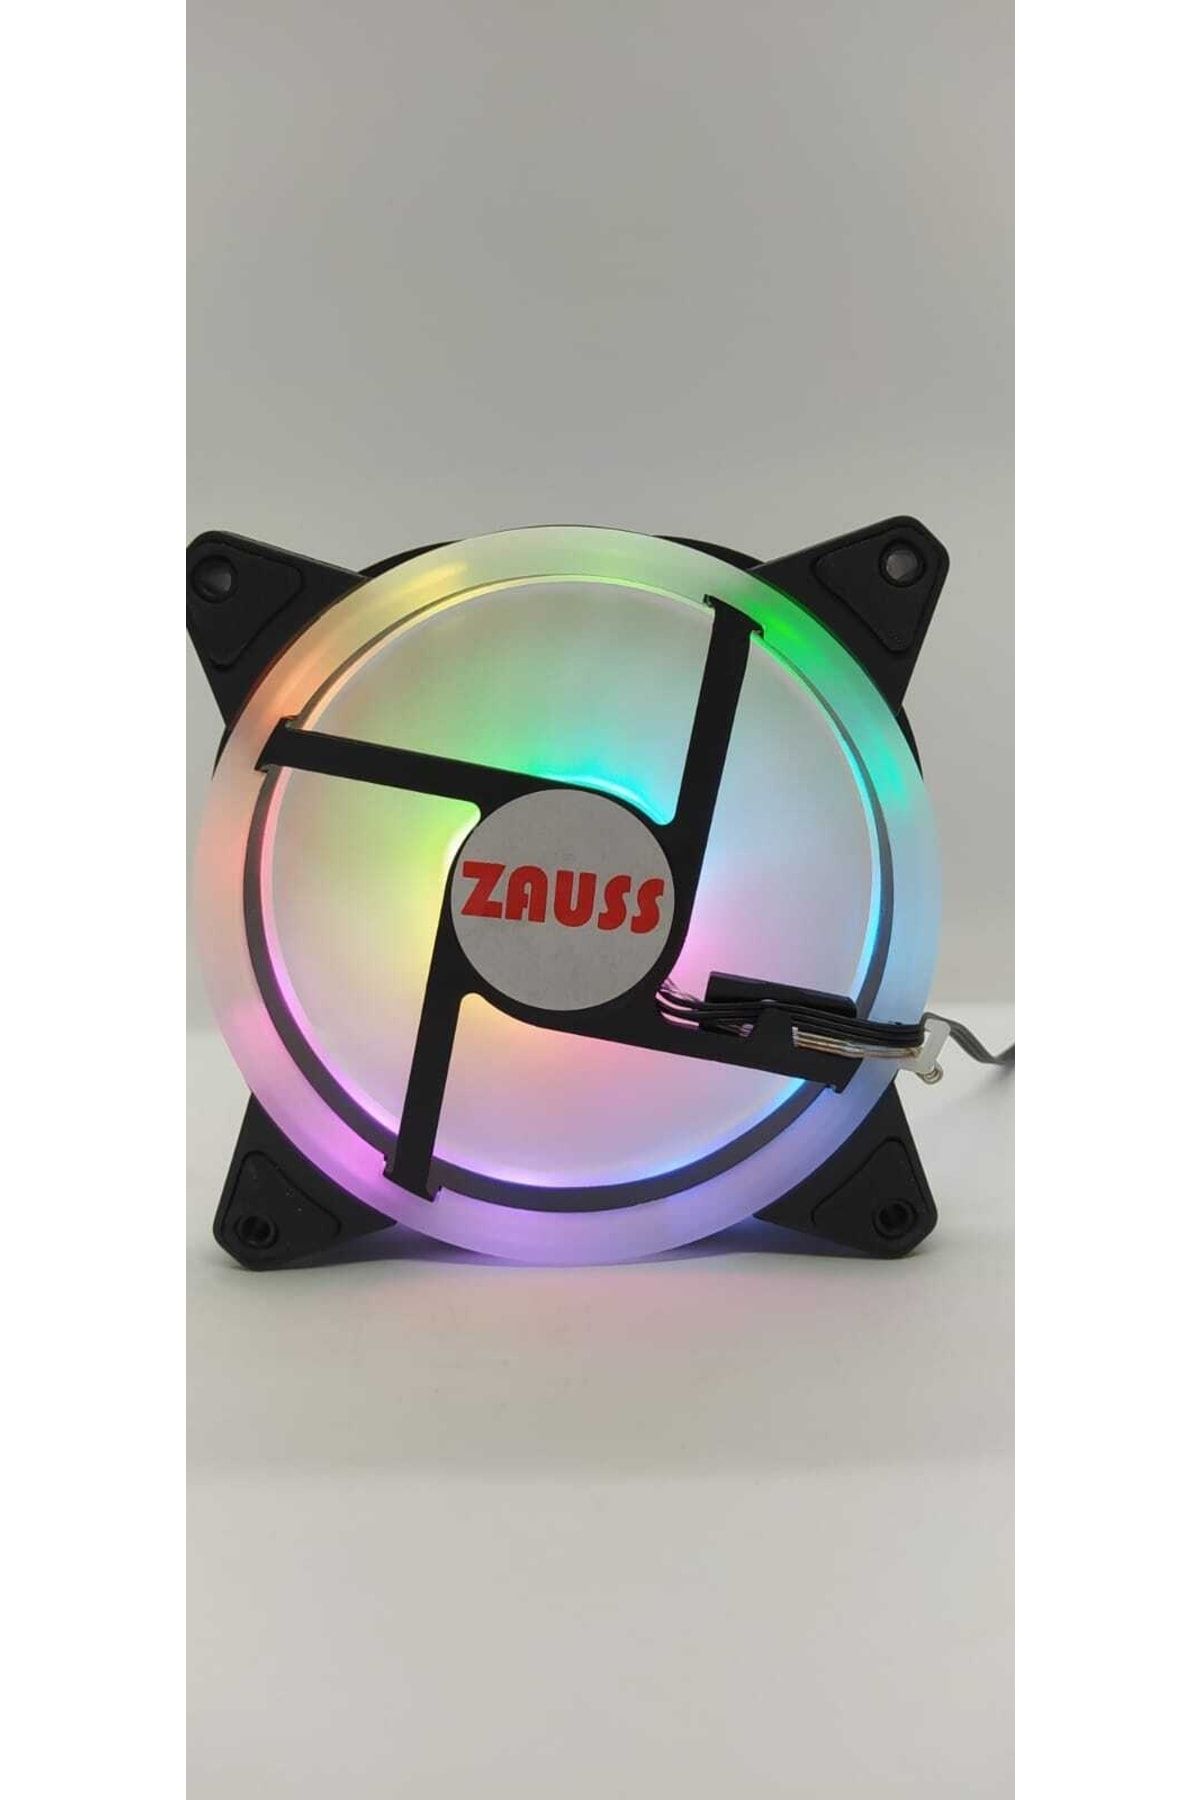 Unichrome Içi Ve Dışı Hareketli Yanan Rainbow Rgb Kasa Mining Fanı 12cm Renkli Gökkuşağı Fanı 0.3a